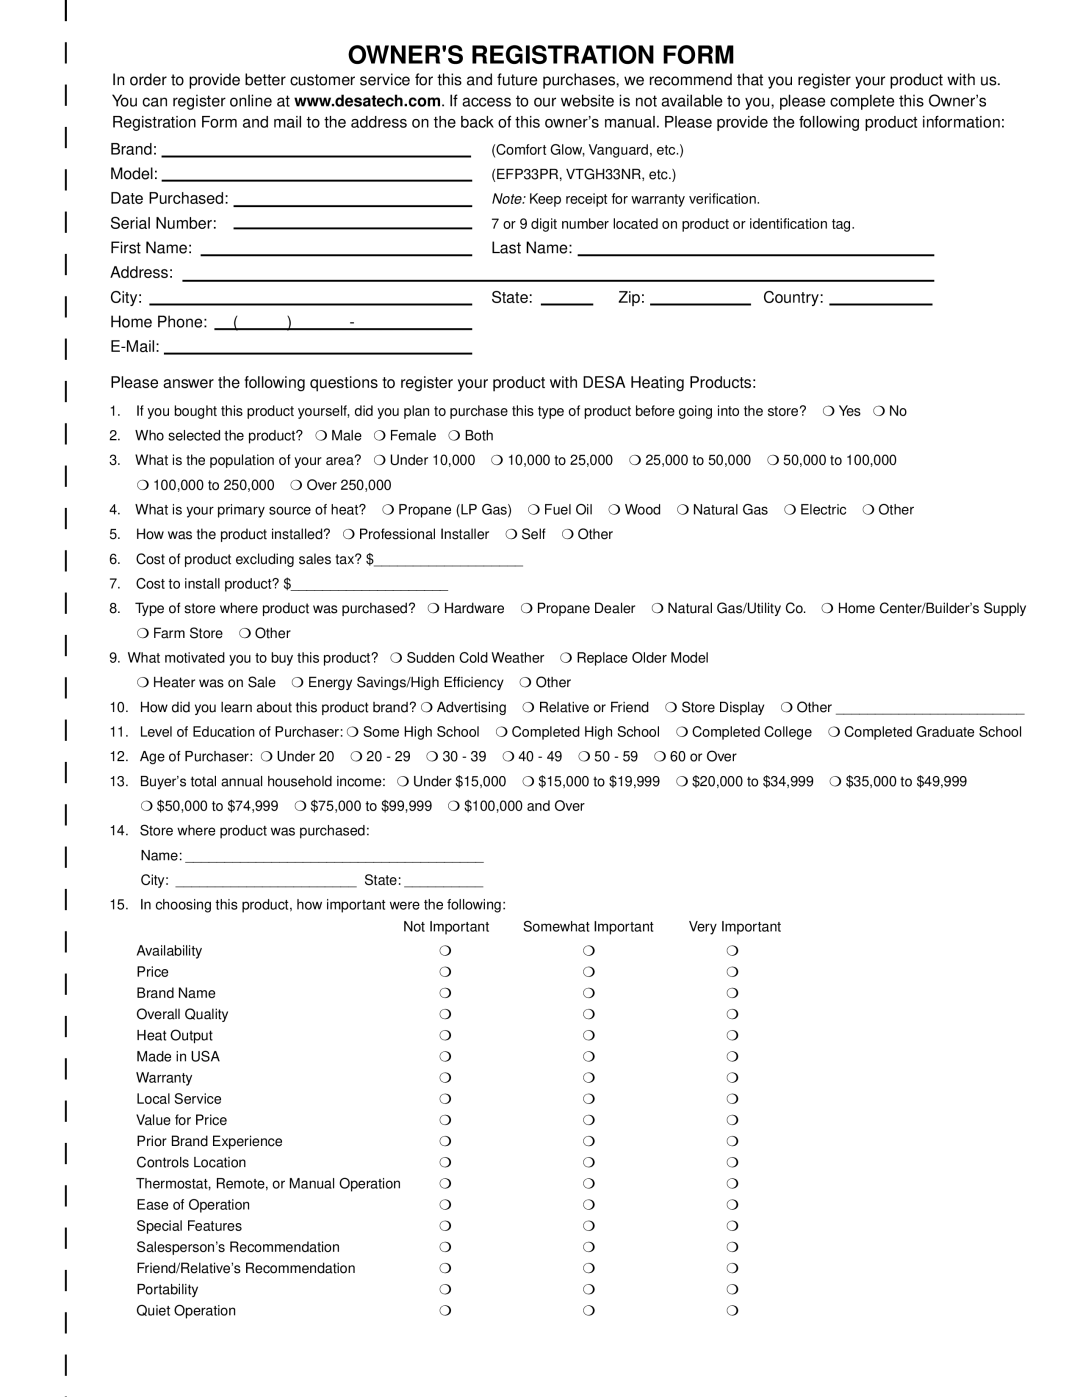 Desa REM10PT RH10PT installation manual Owners Registration Form 